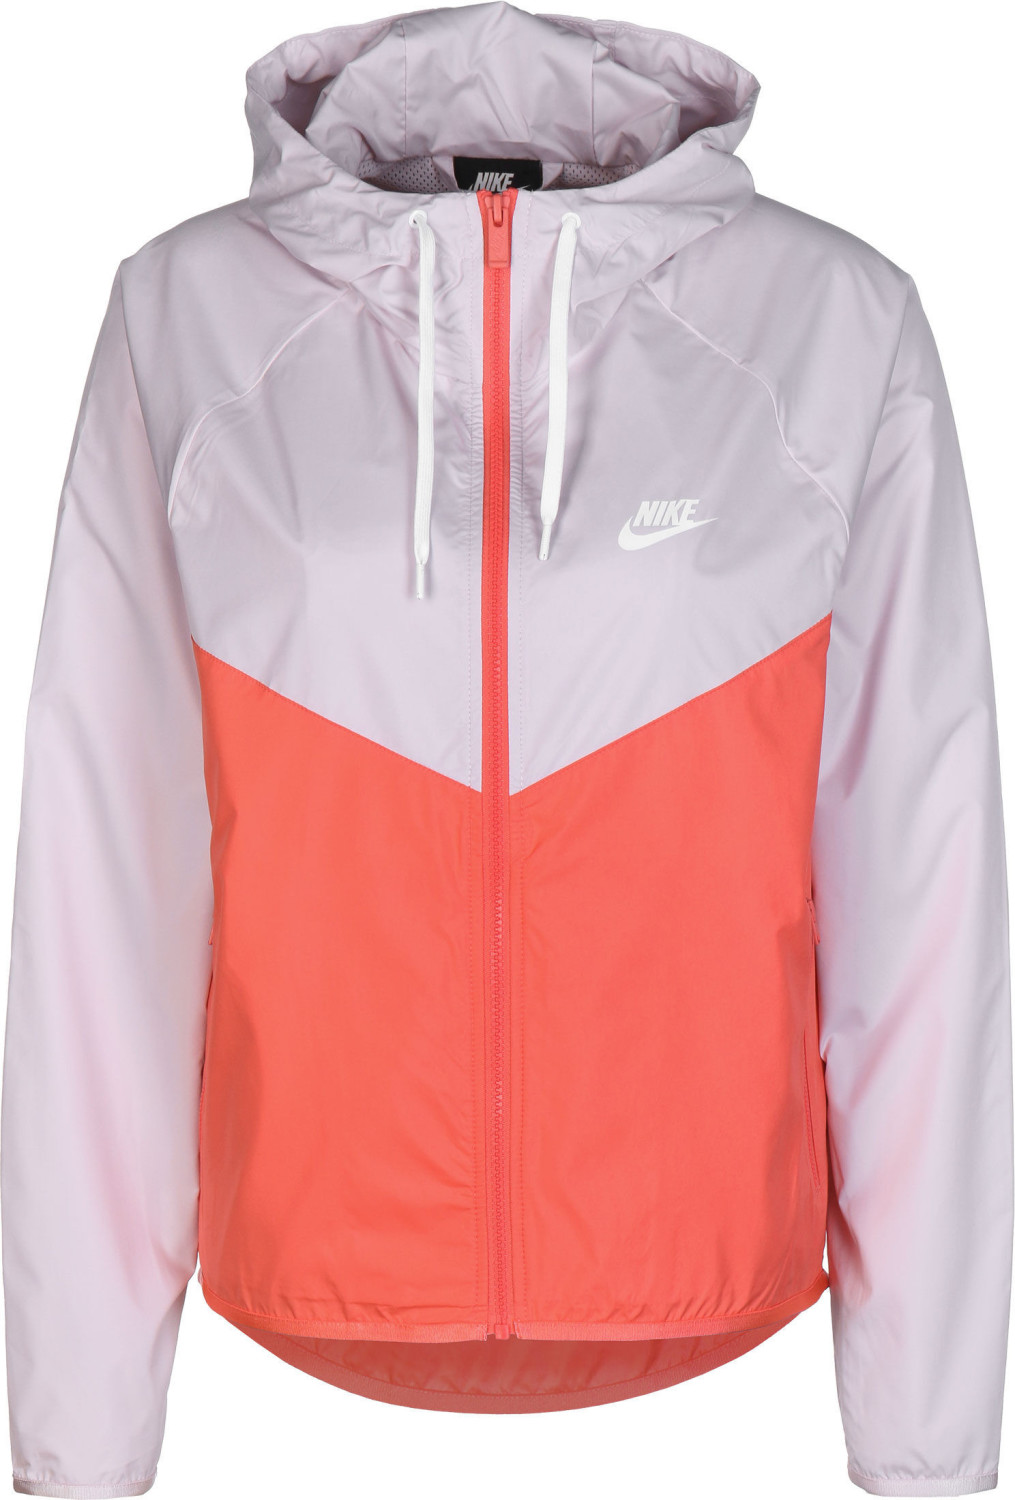 Nike Women's Jacket Windrunner (BV3939-699) barely rose